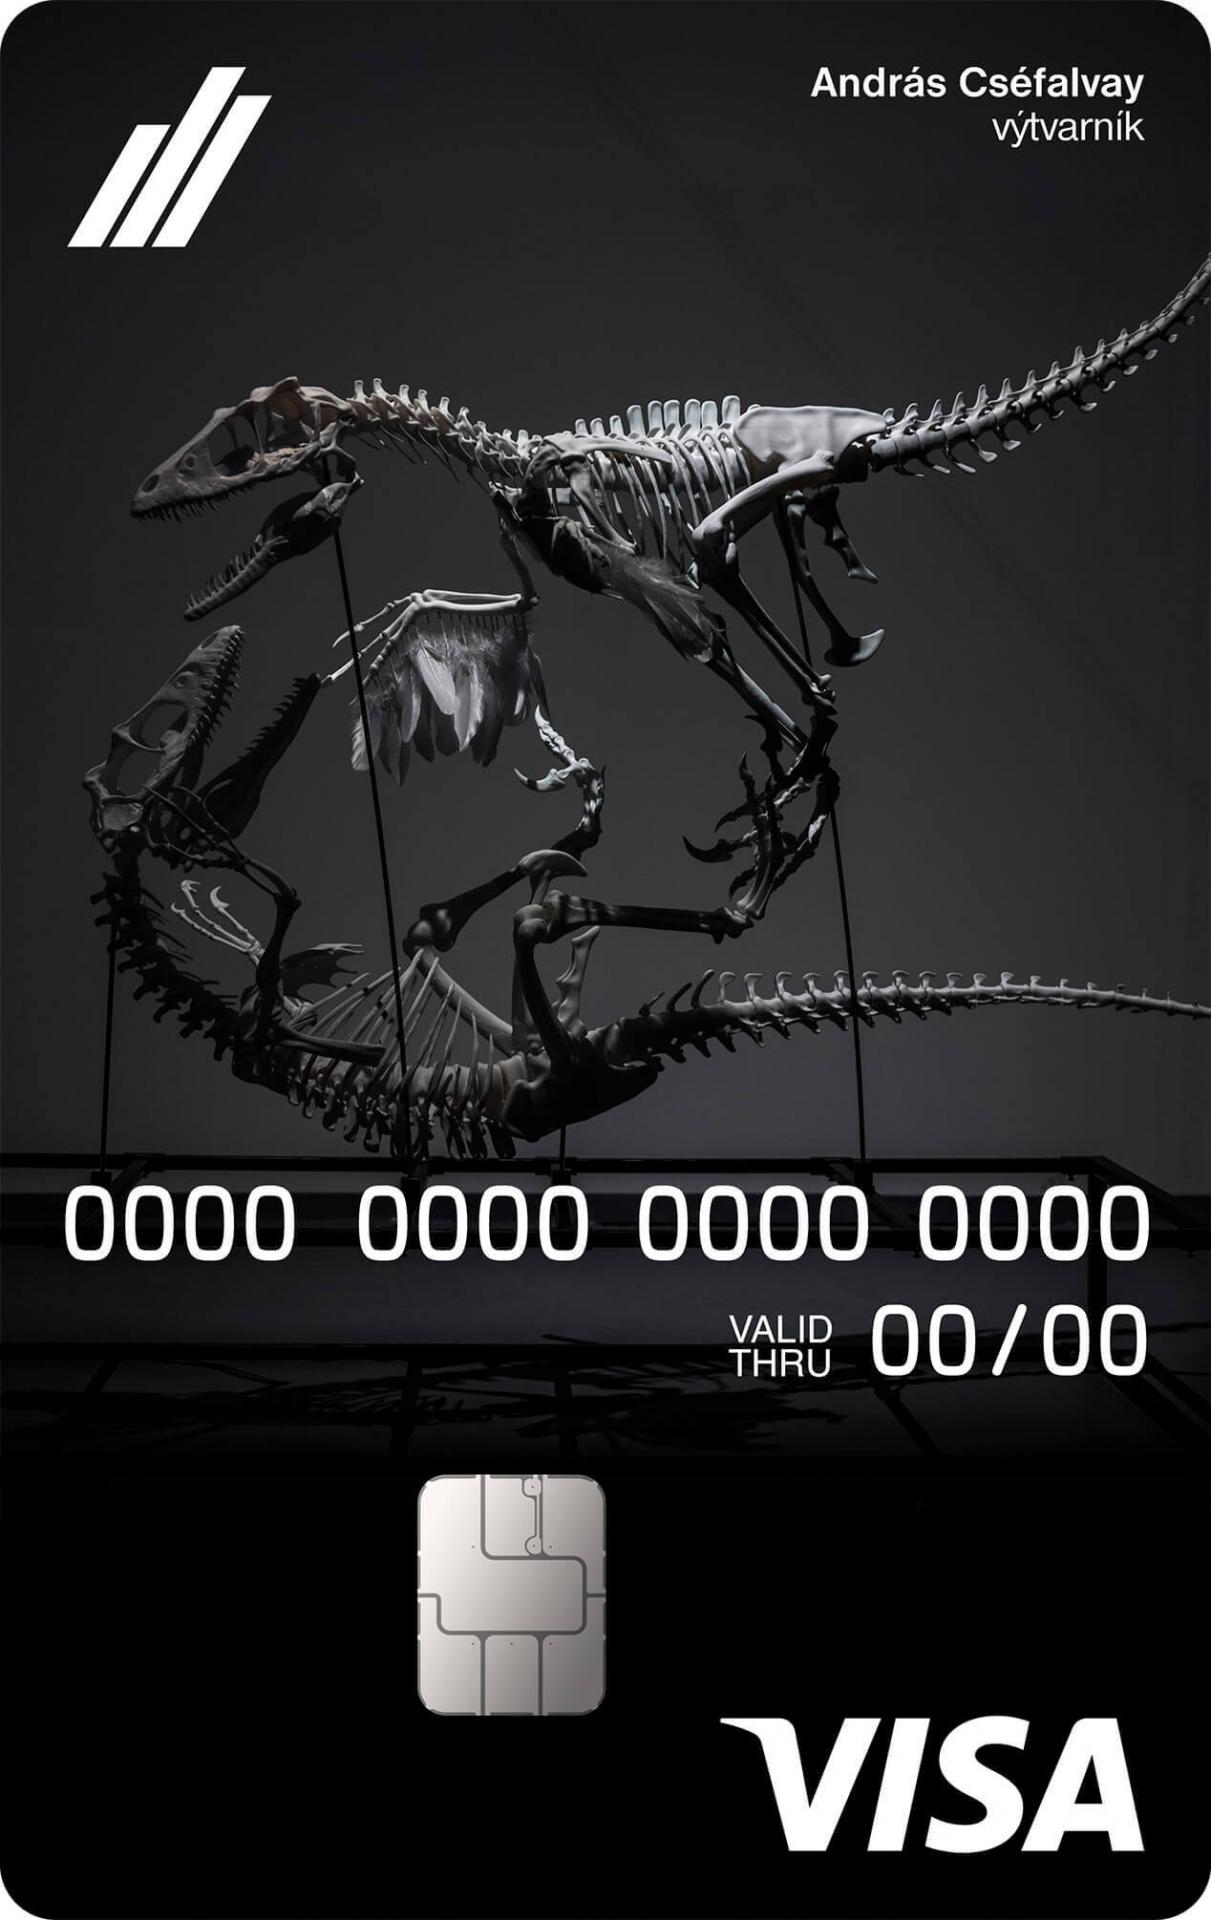 Karta odkazujúca na Triumph of Feathers - model bojujúcich dinosaurov vytvorený 3D tlačou od Andrása Cséfalvaya